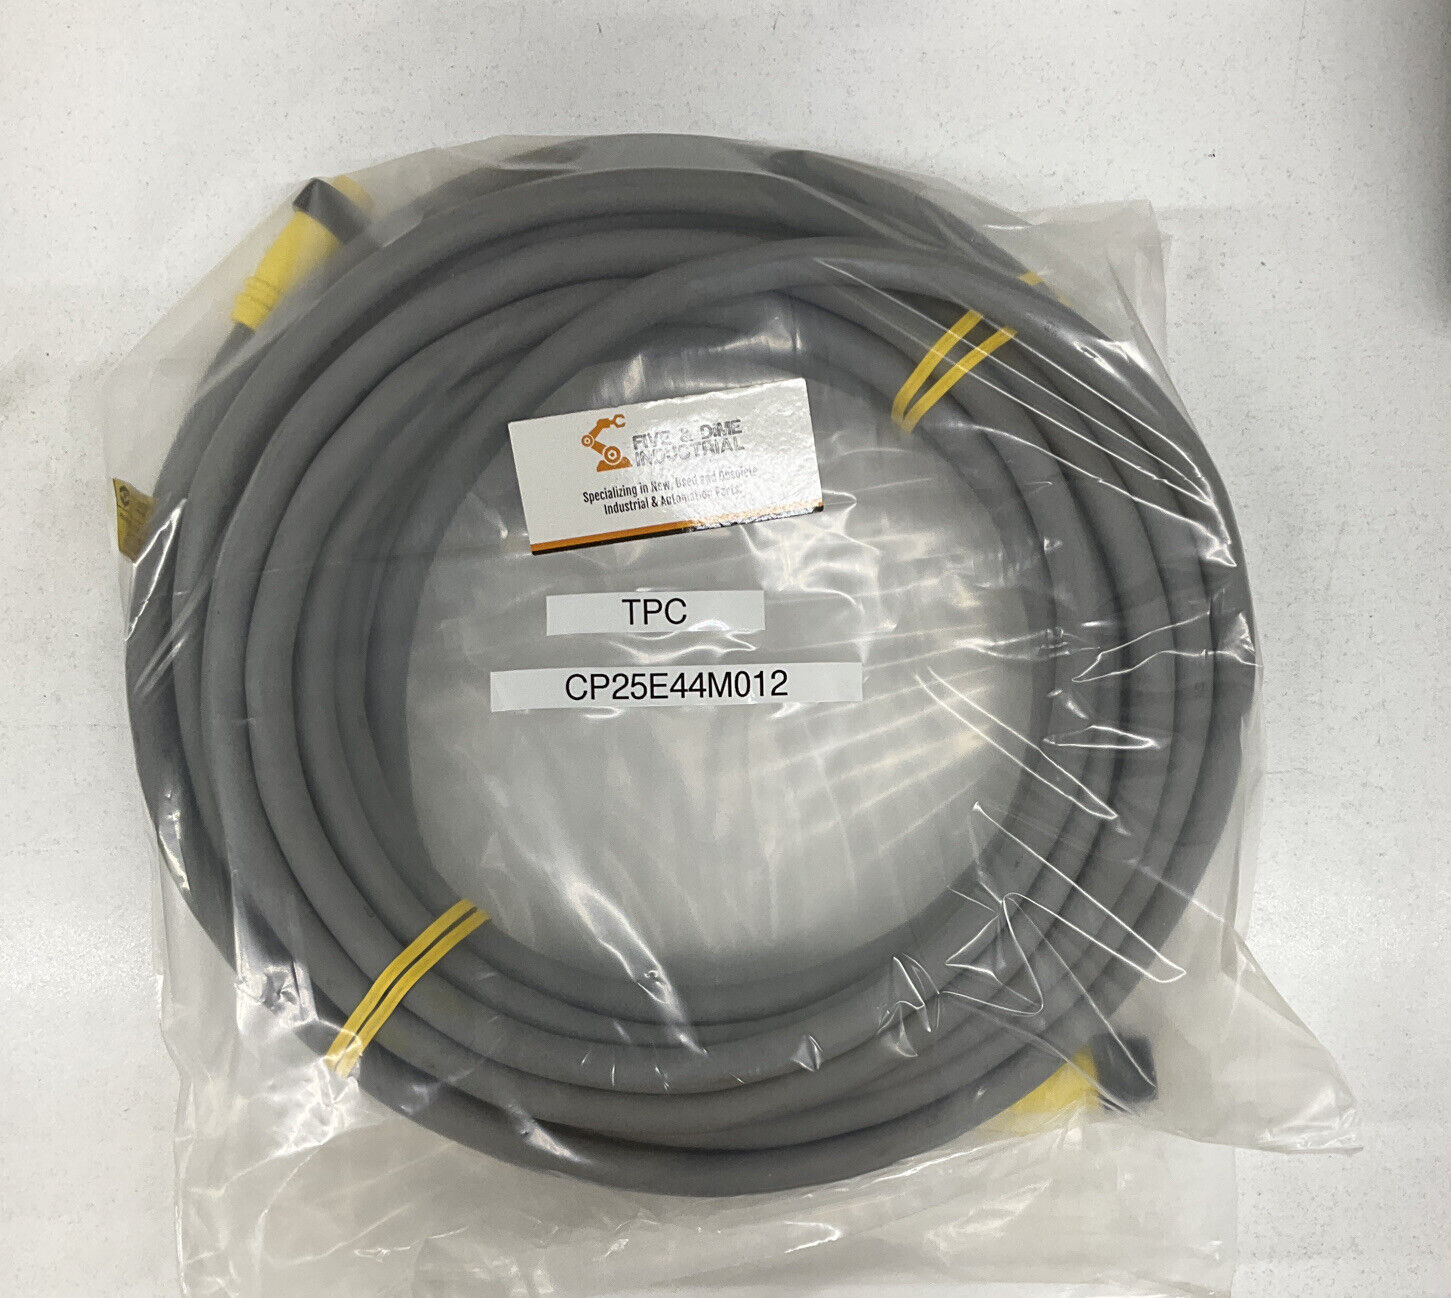 TPC CP25E44M012 Super-Trex QUICK CONNECT CABLE 12M (CBL123)